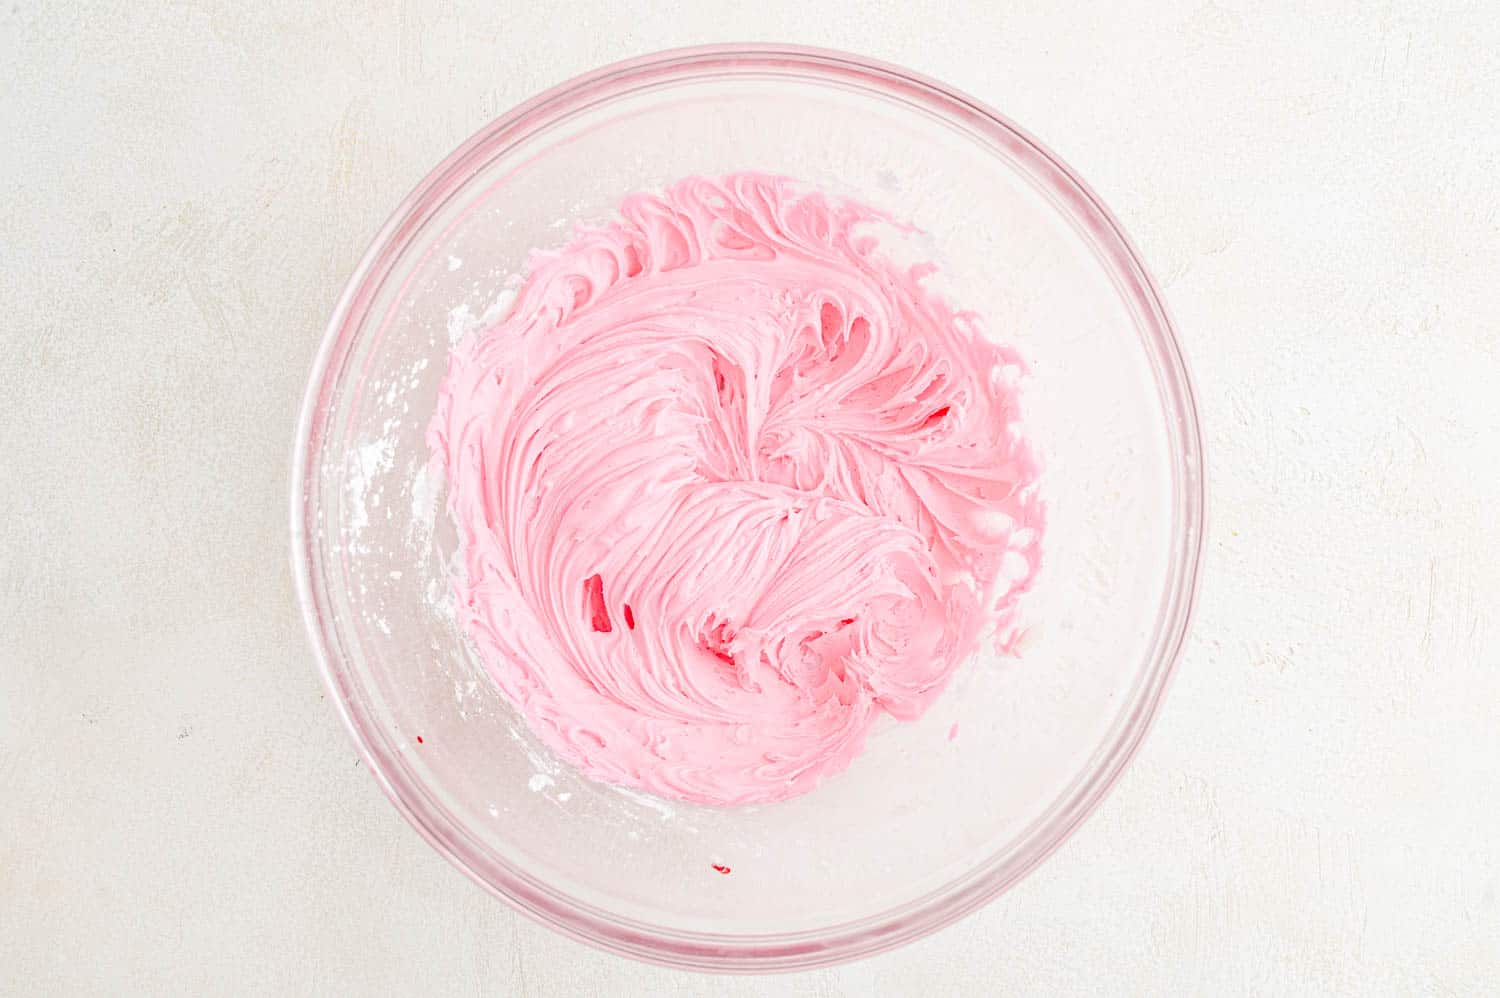 Glaçage à la crème au beurre rose dans un bol à mélanger.